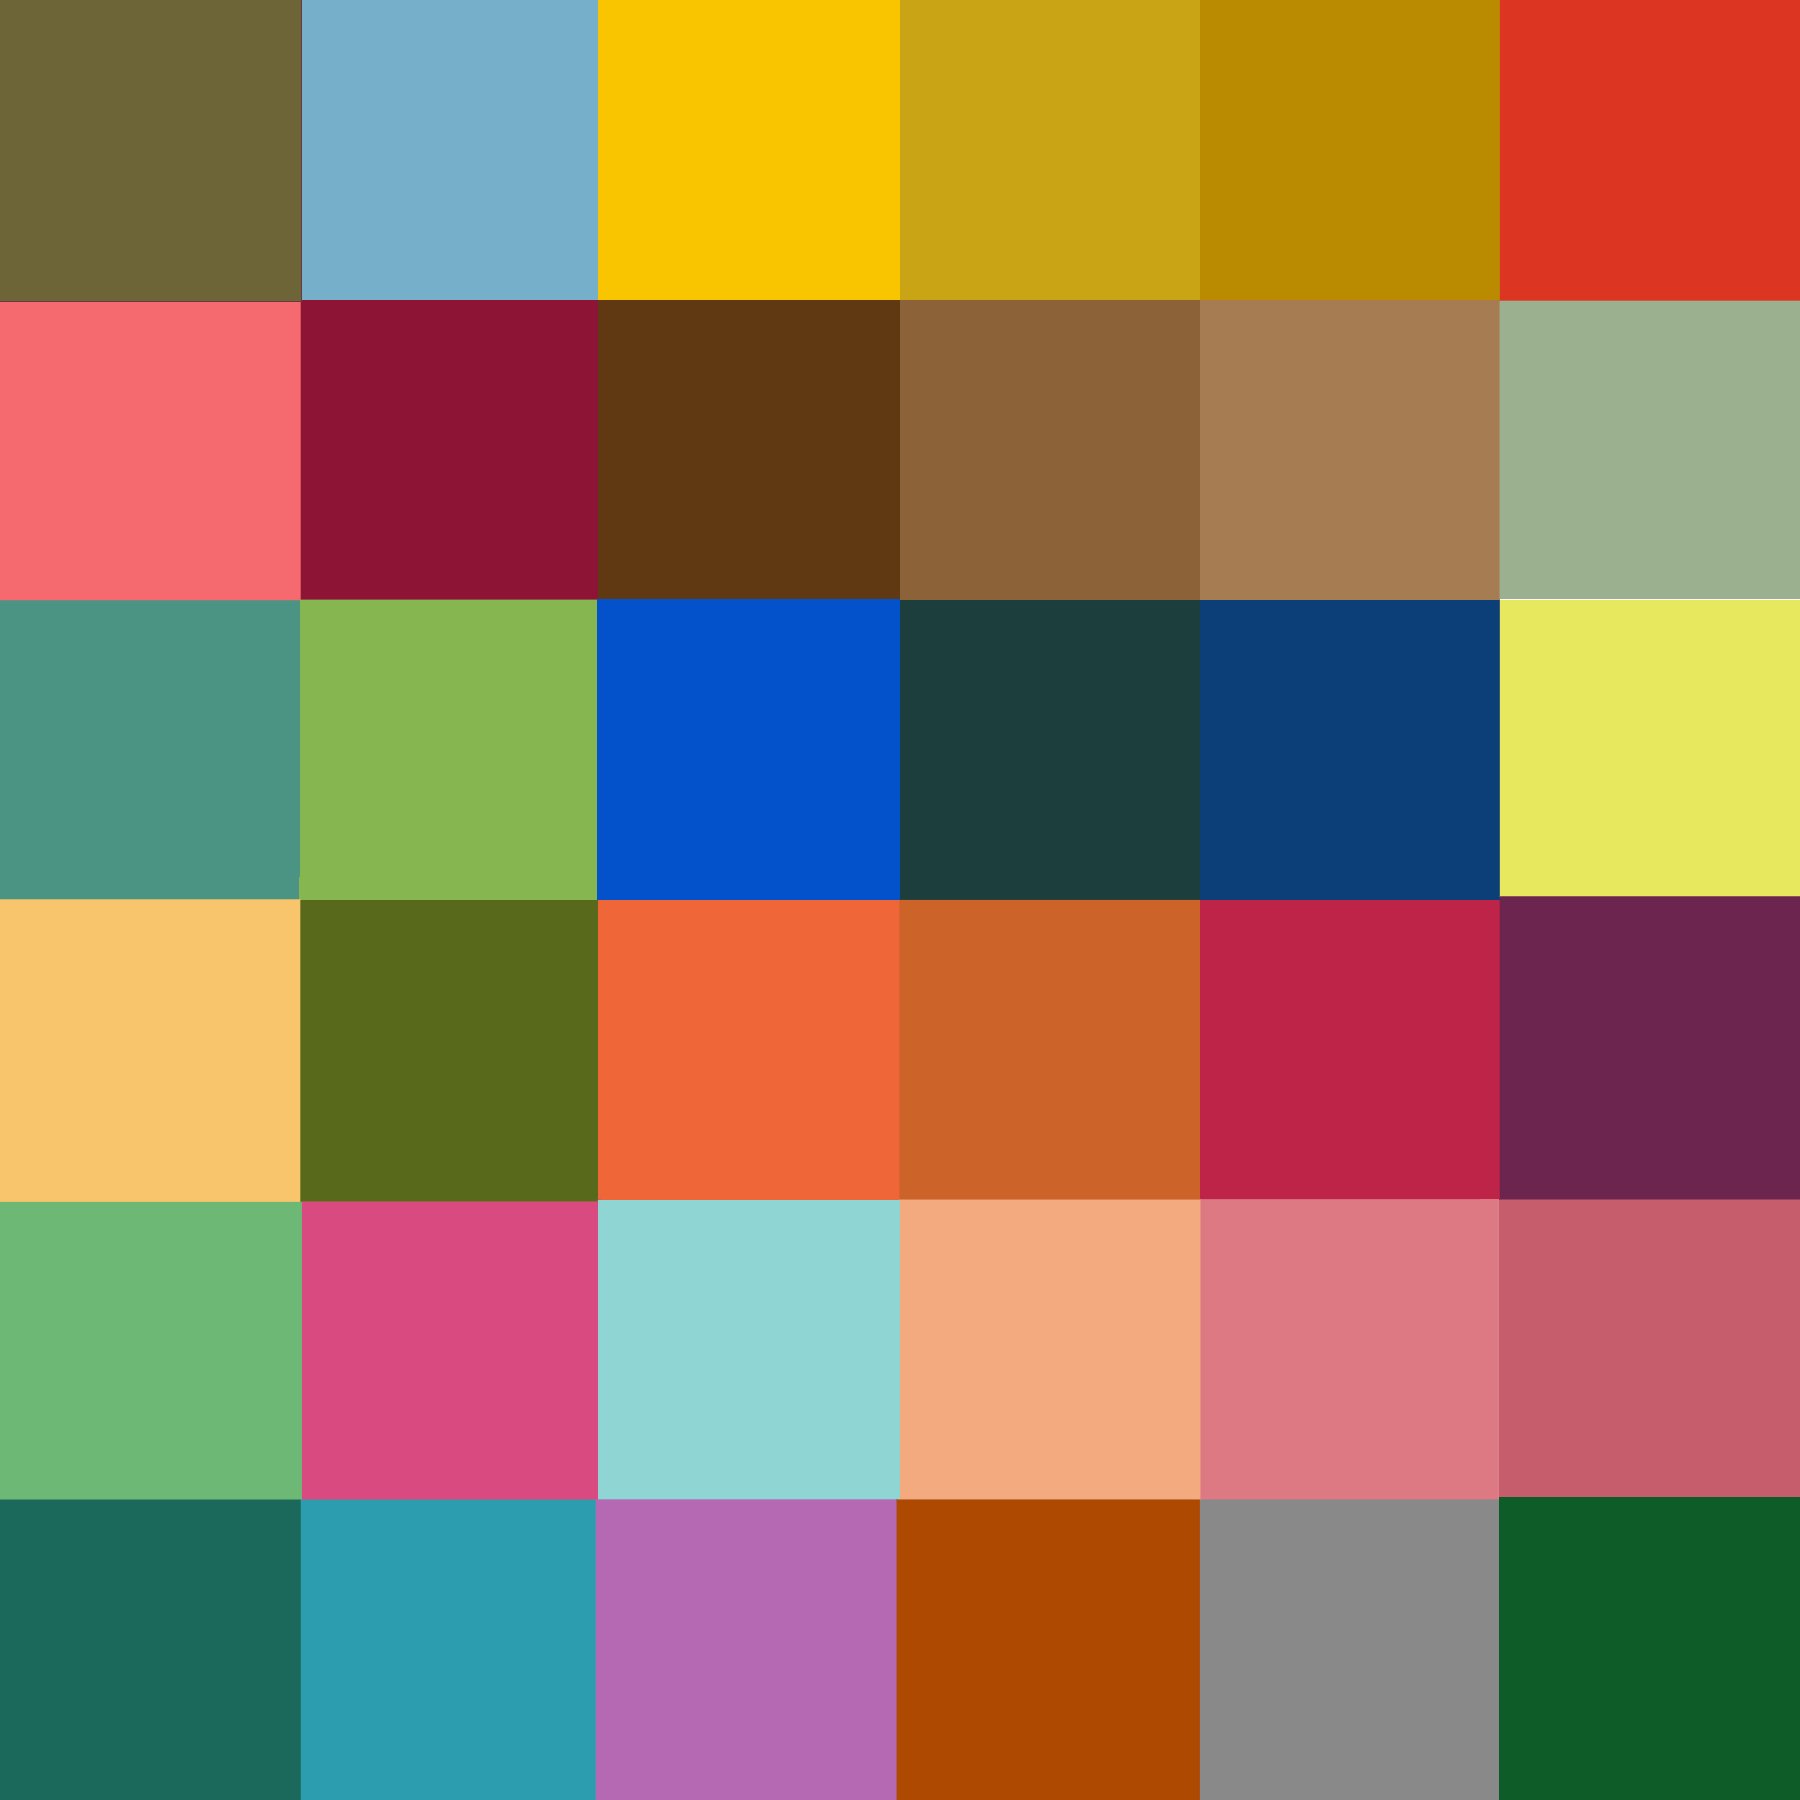 Color palette for blender - 68 photo